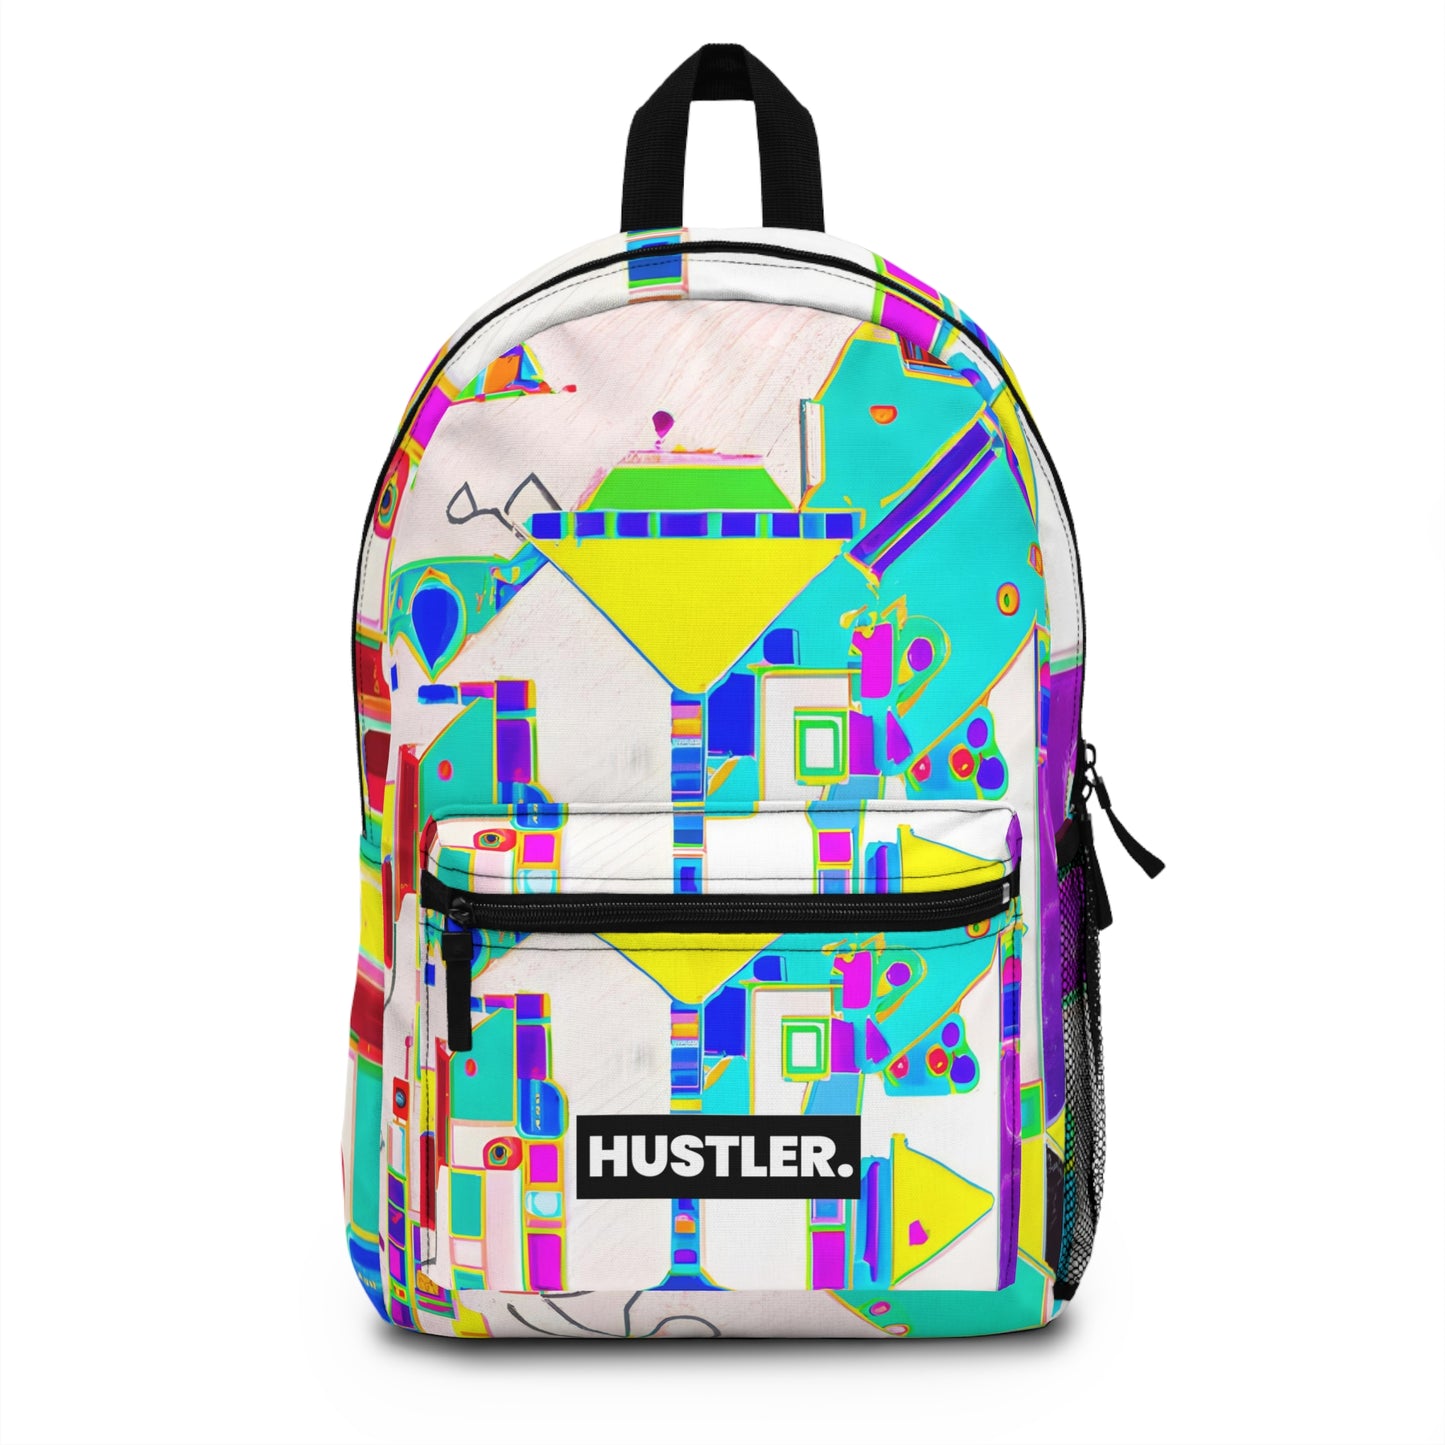 NyxStarlight - Hustler Backpack